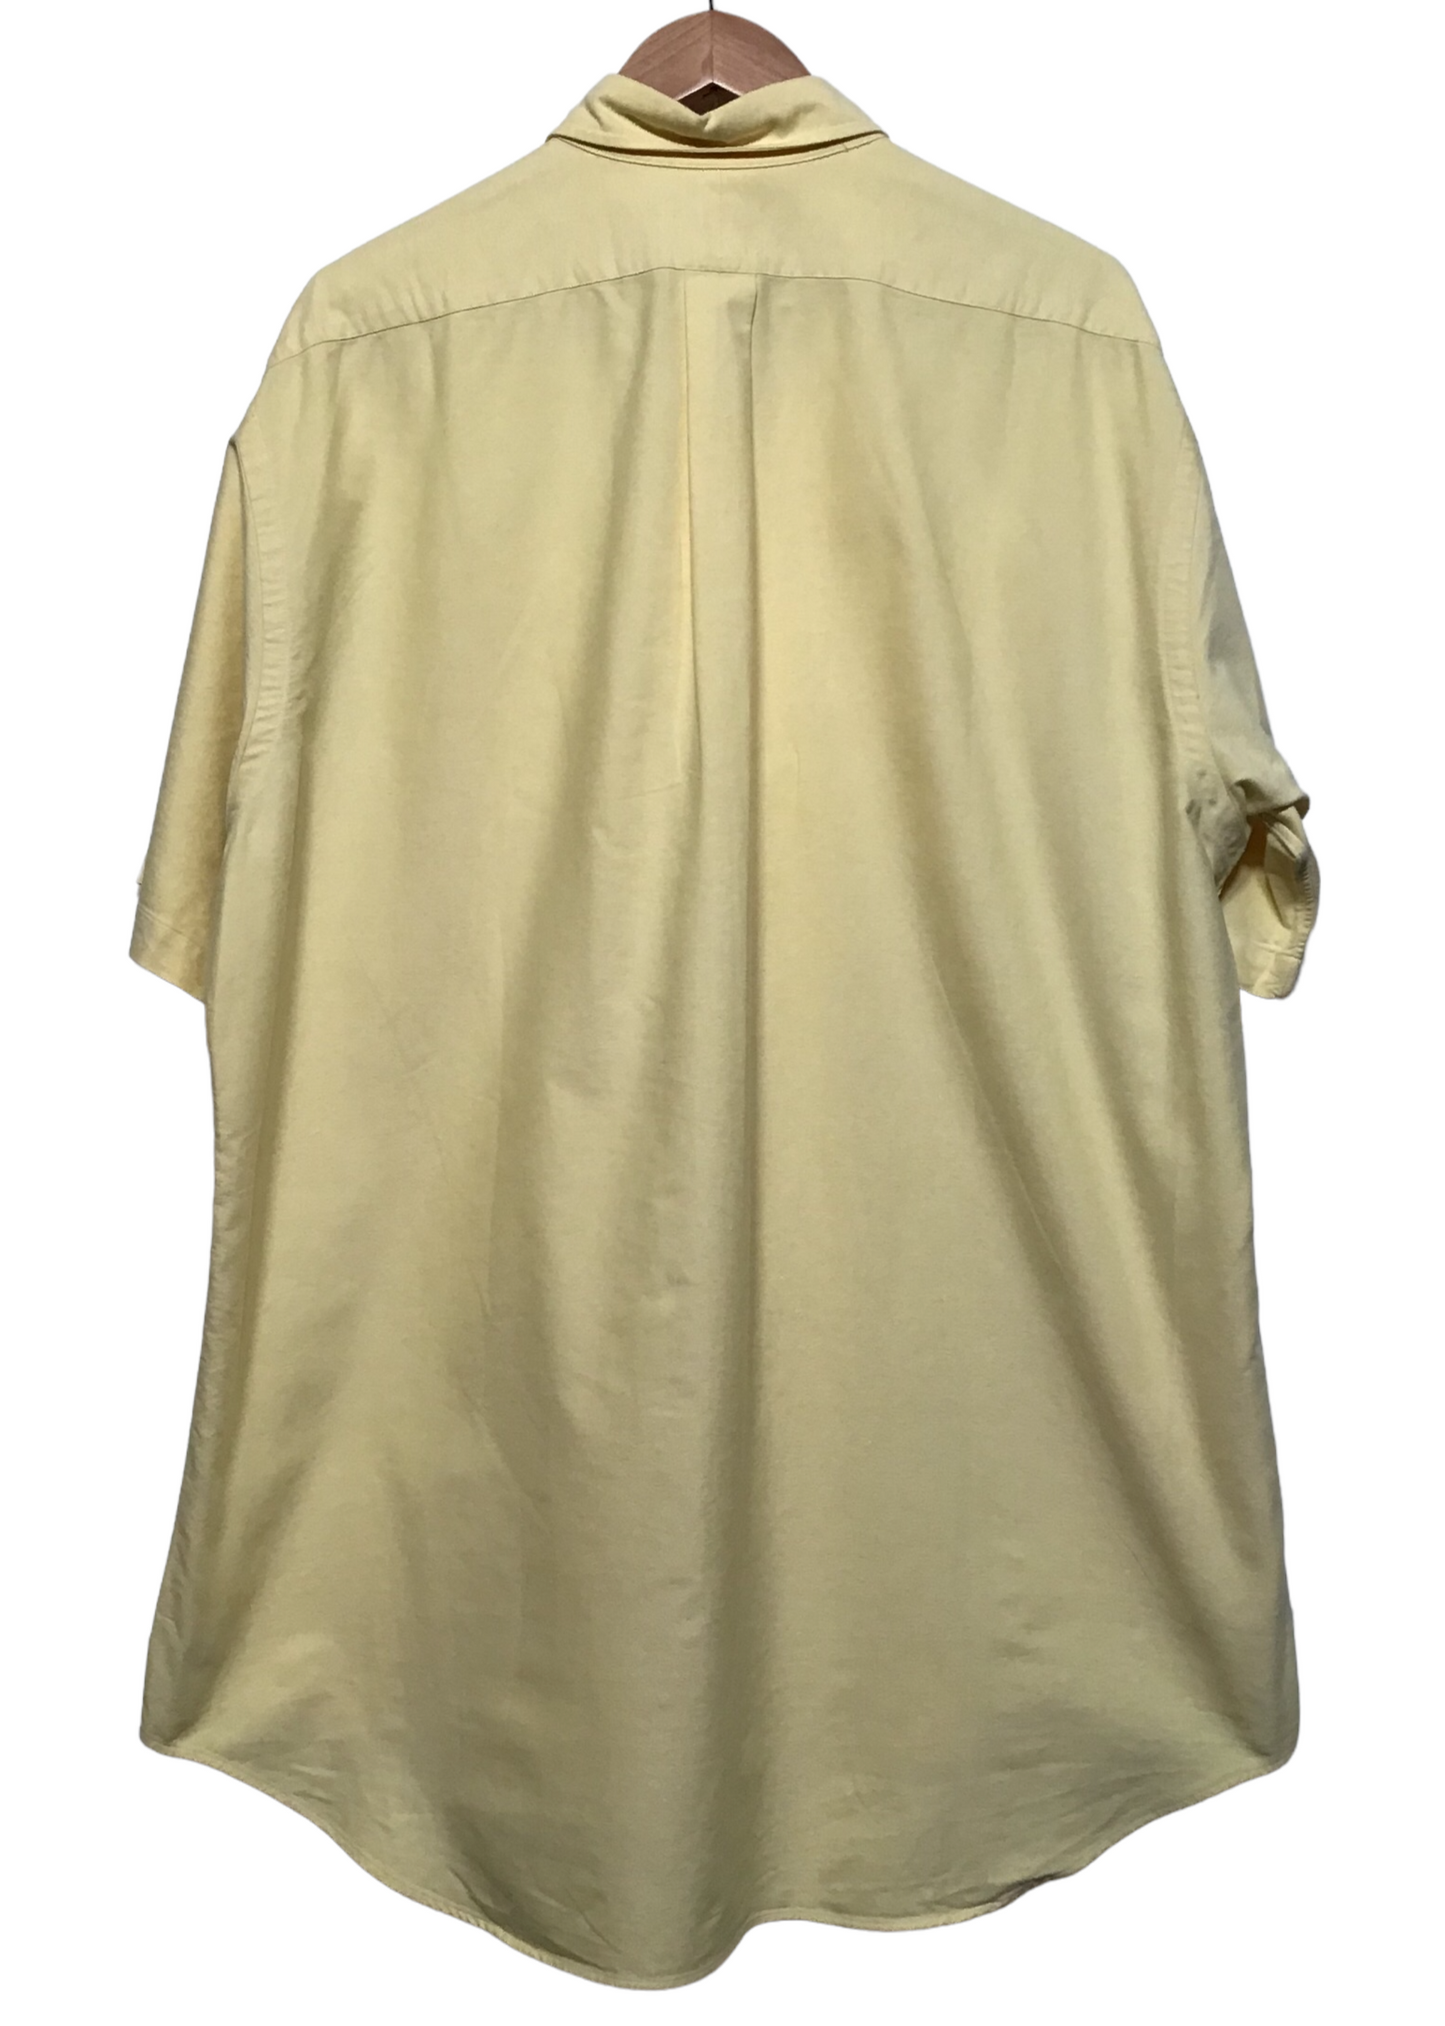 Ralph Lauren Yellow Short Sleeve Shirt (Size L)